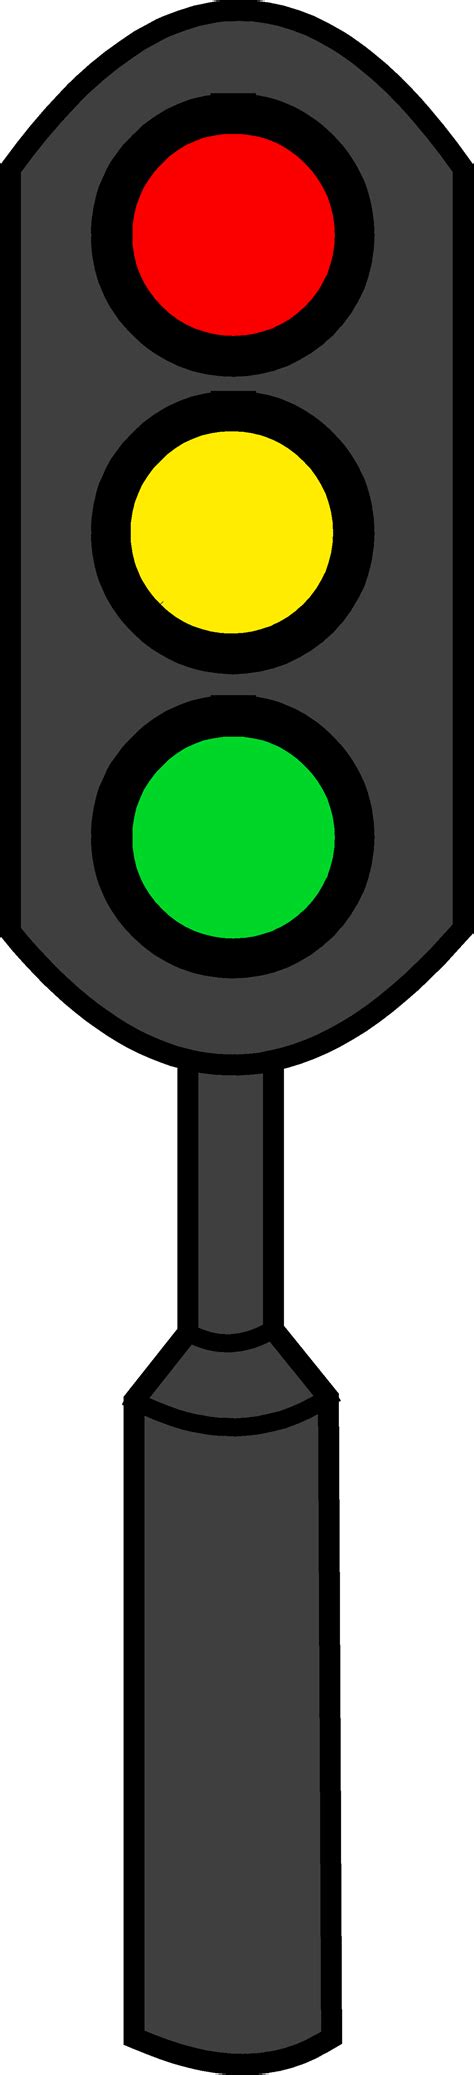 Traffic Light Clip Art Black And White Clipart Best